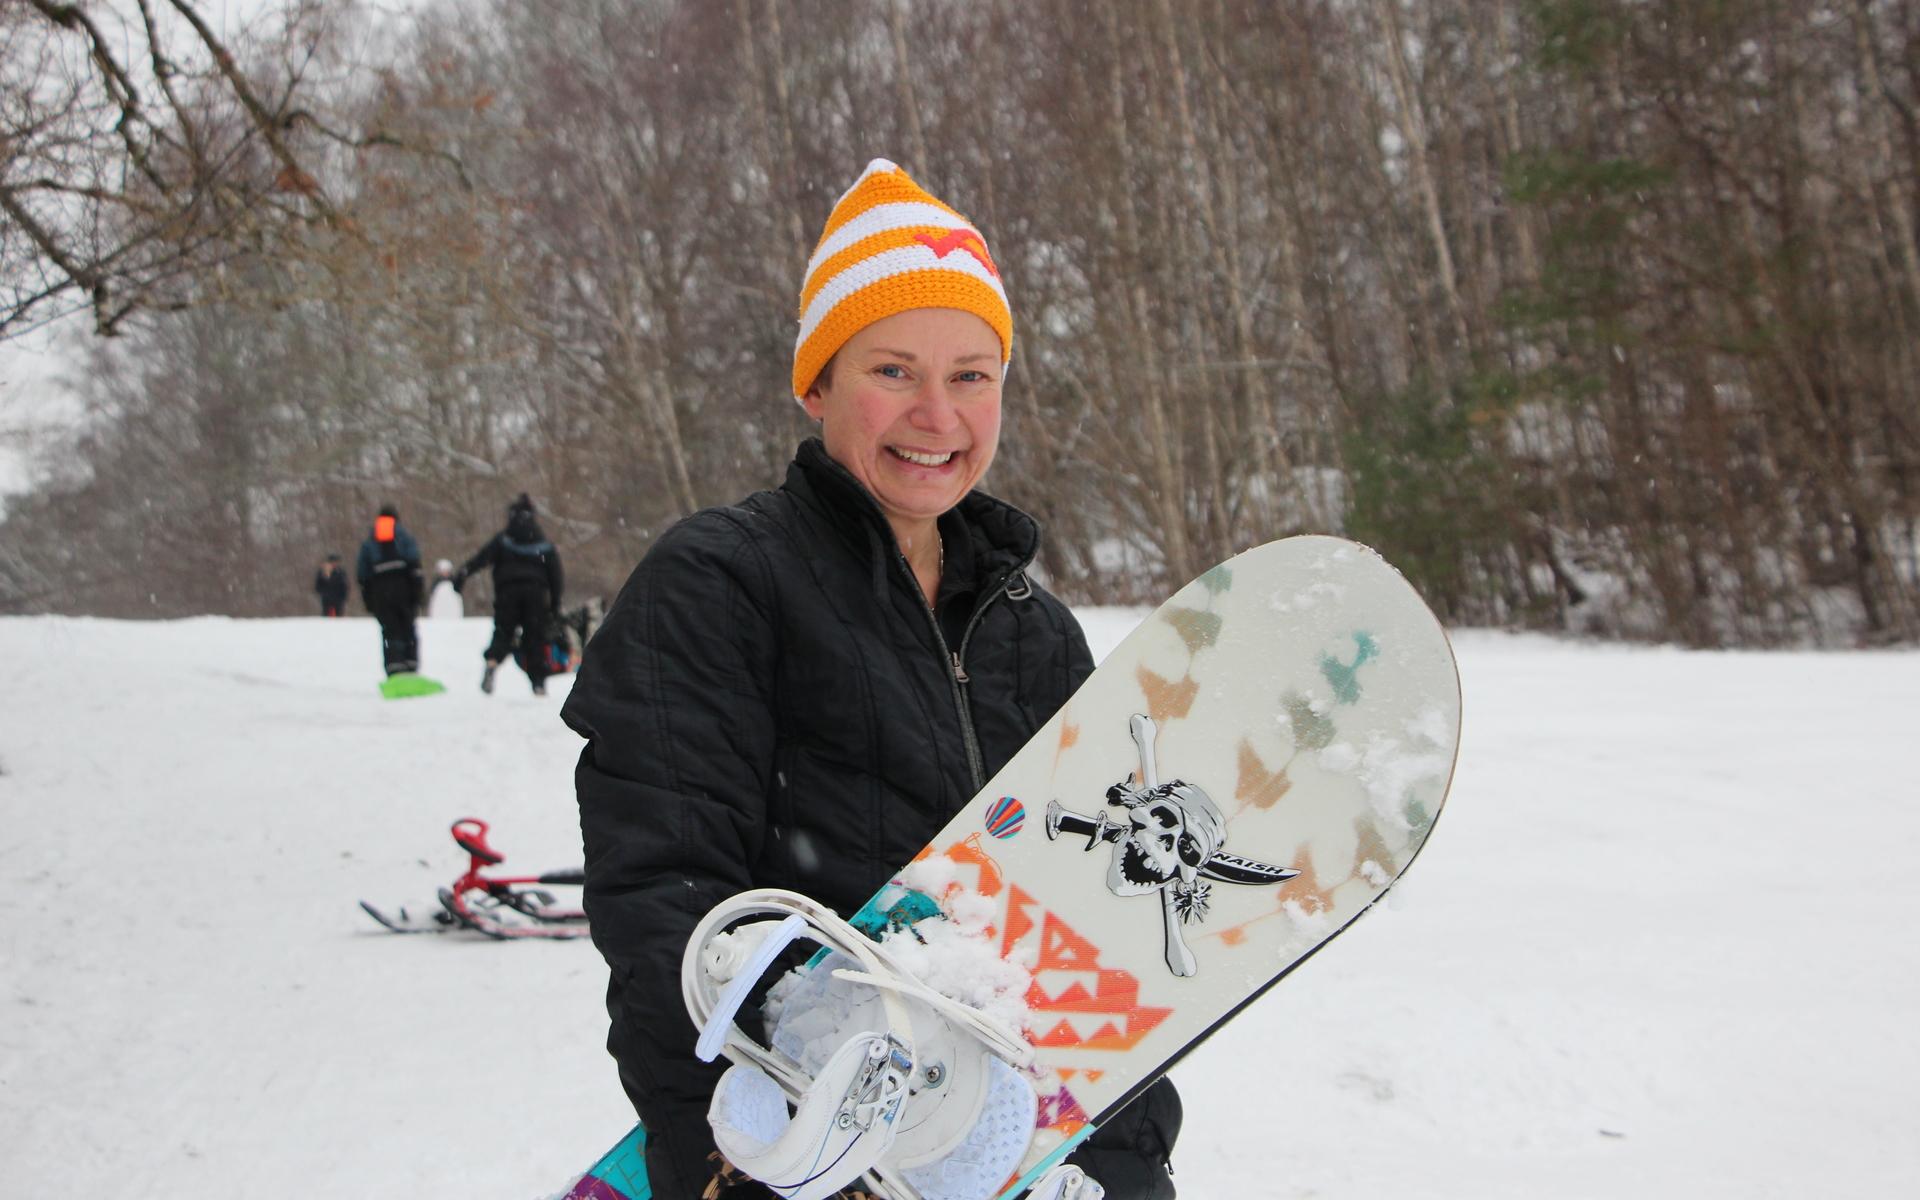 Anna Hjaman, 46 år, var den äldsta åkaren i backen vid Krokenorum i lördags. Hon testade sin snowboard. ”Kul att vi har en backa här. det hade varit bra om den var upplyst om kvällarna” sa hon.